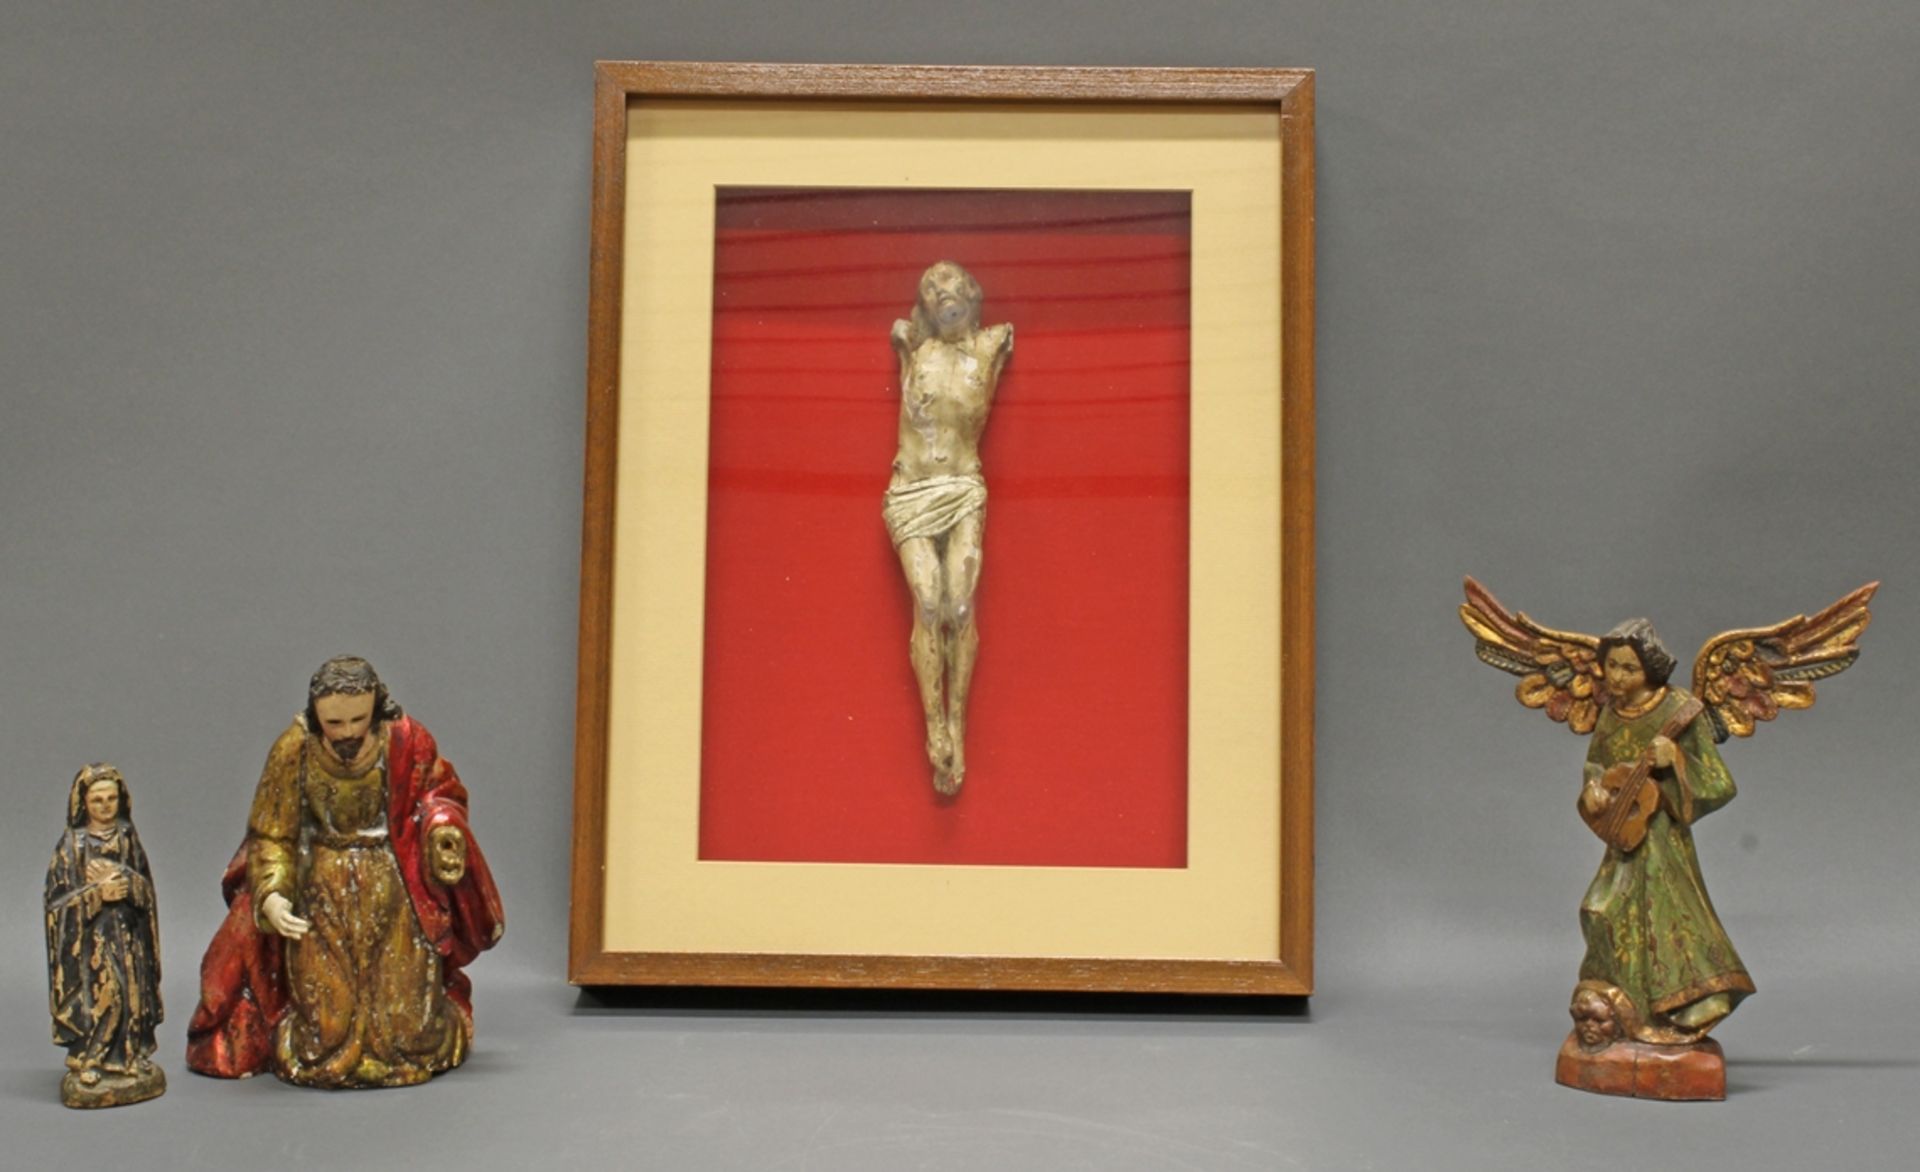 4 Heiligenskulpturen, Peru 18. Jh. und 20. Jh., jeweils Holz geschnitzt und gefasst, zwischen 15 cm